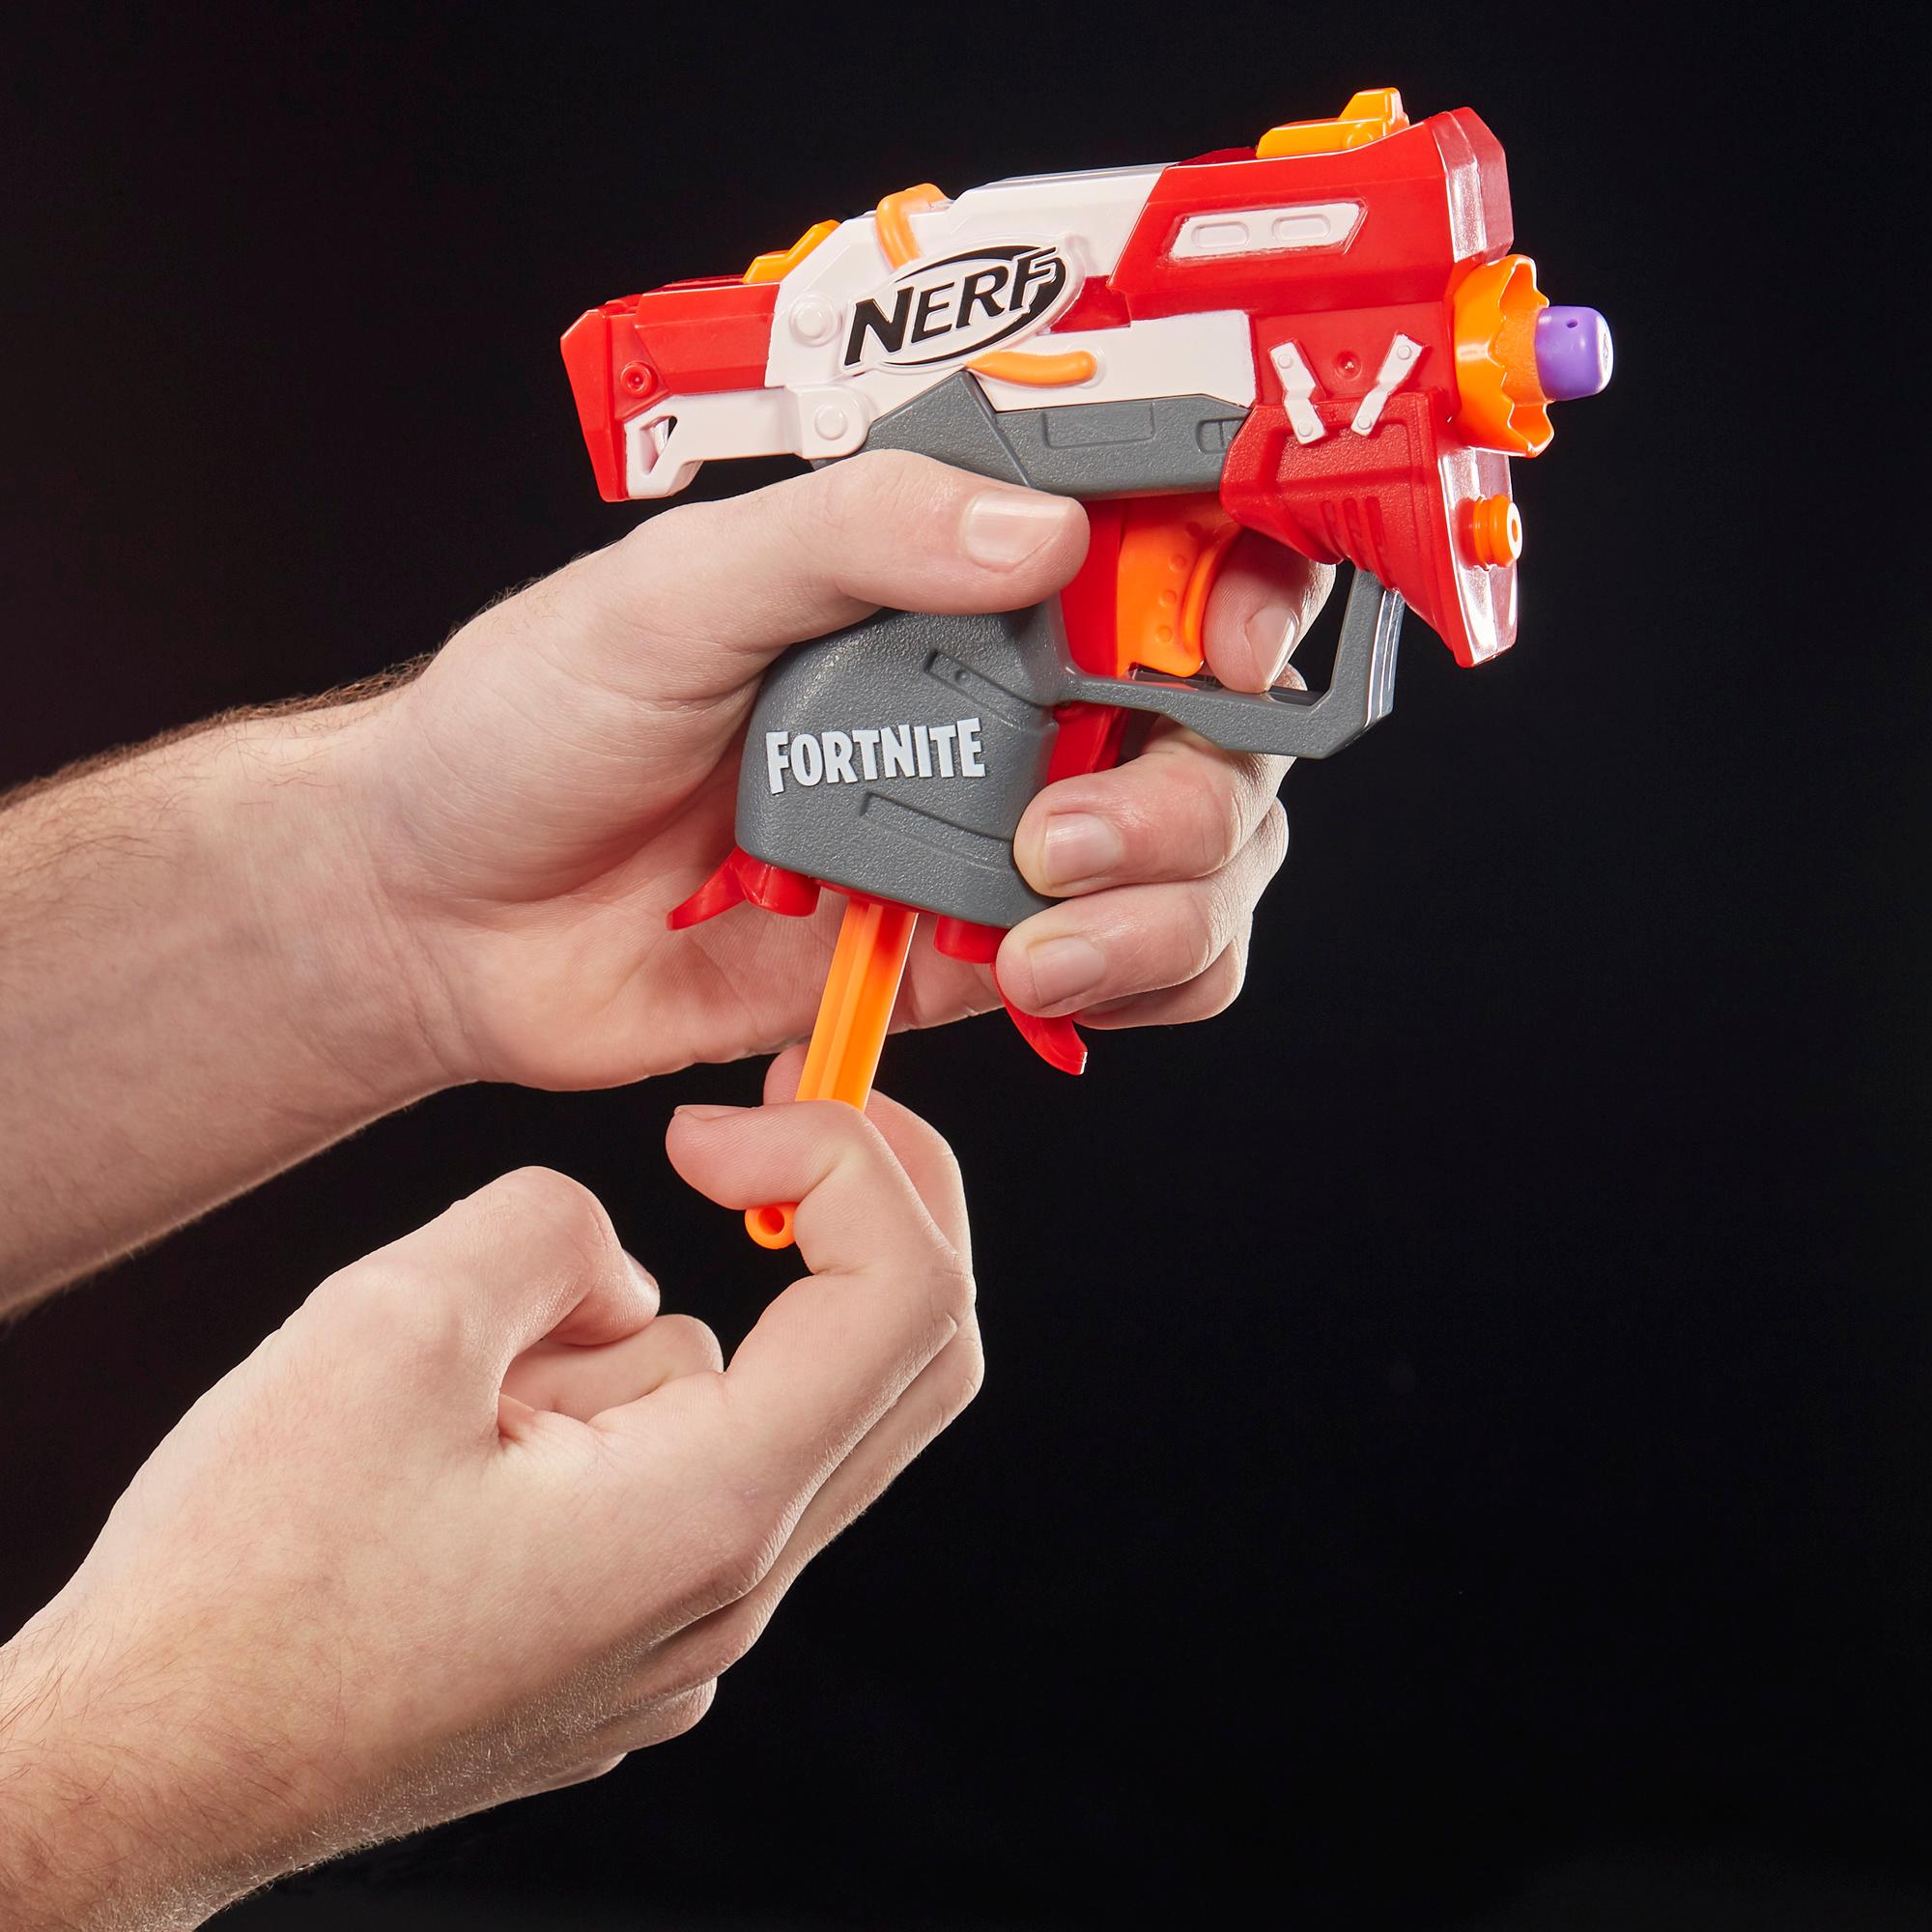 Blaster Fortnite TS Nerf MicroShots, inclut 2 fléchettes Nerf Elite officielles, pour enfants, ados et adultes